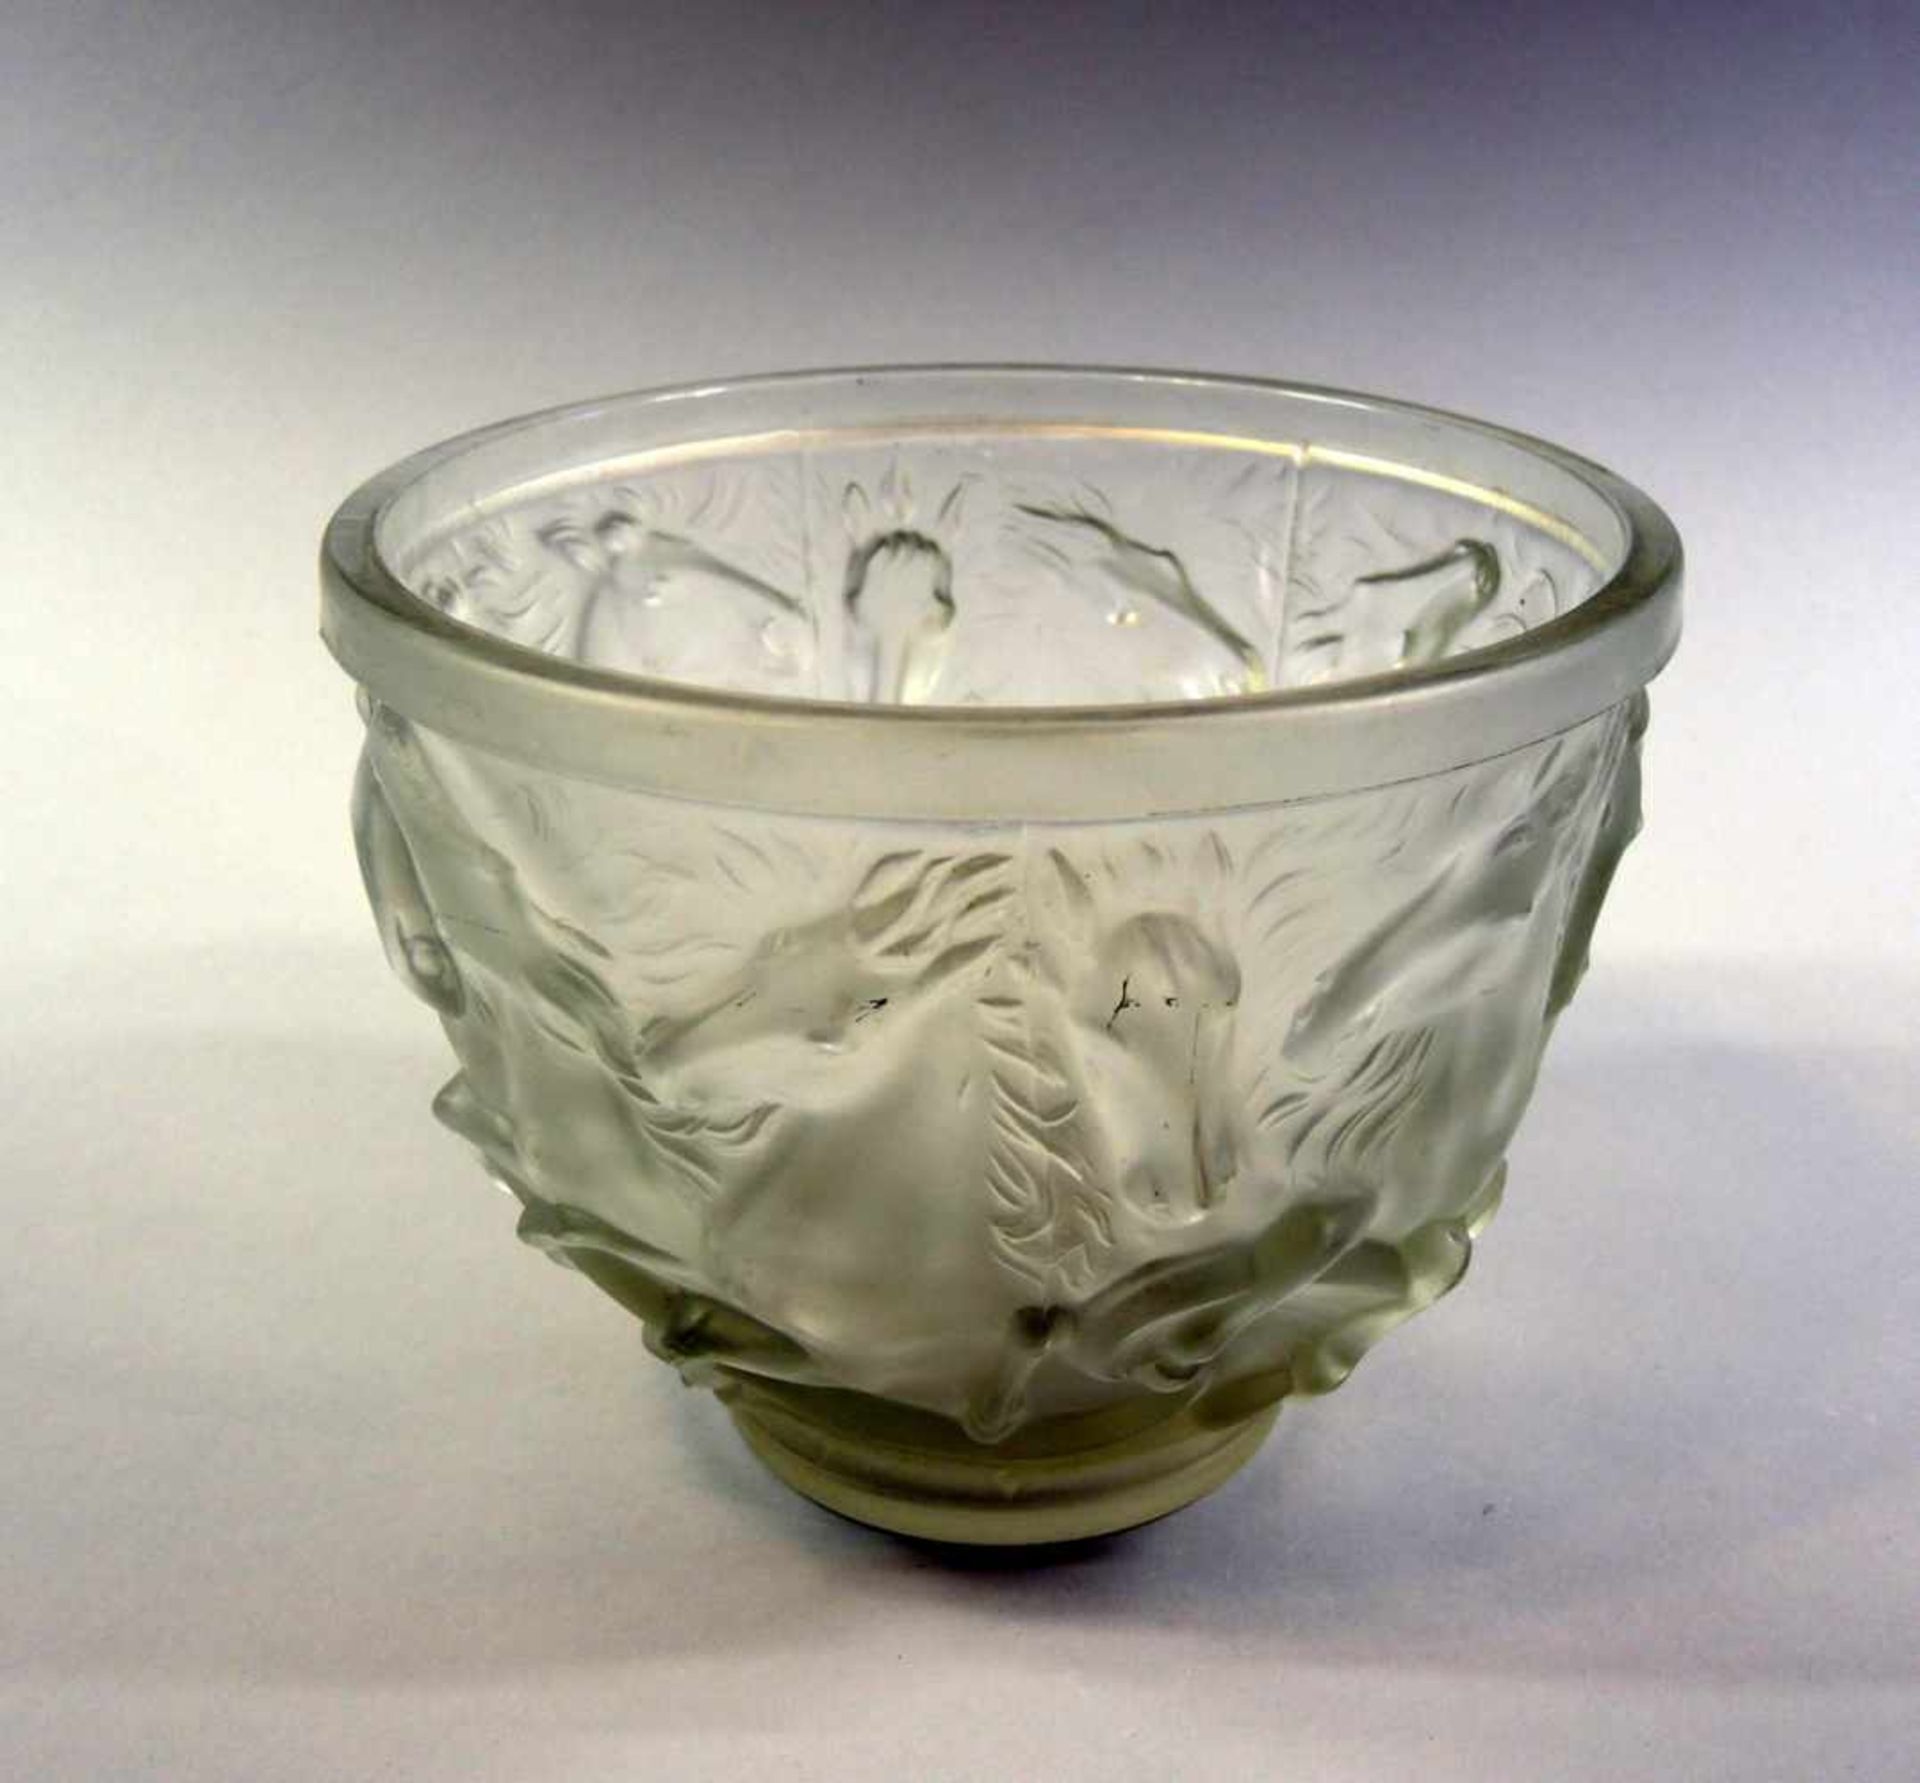 Große Schale Glas, mit plastischen Pferden. Wohl Edling, um 1920. H ca. 15 cm